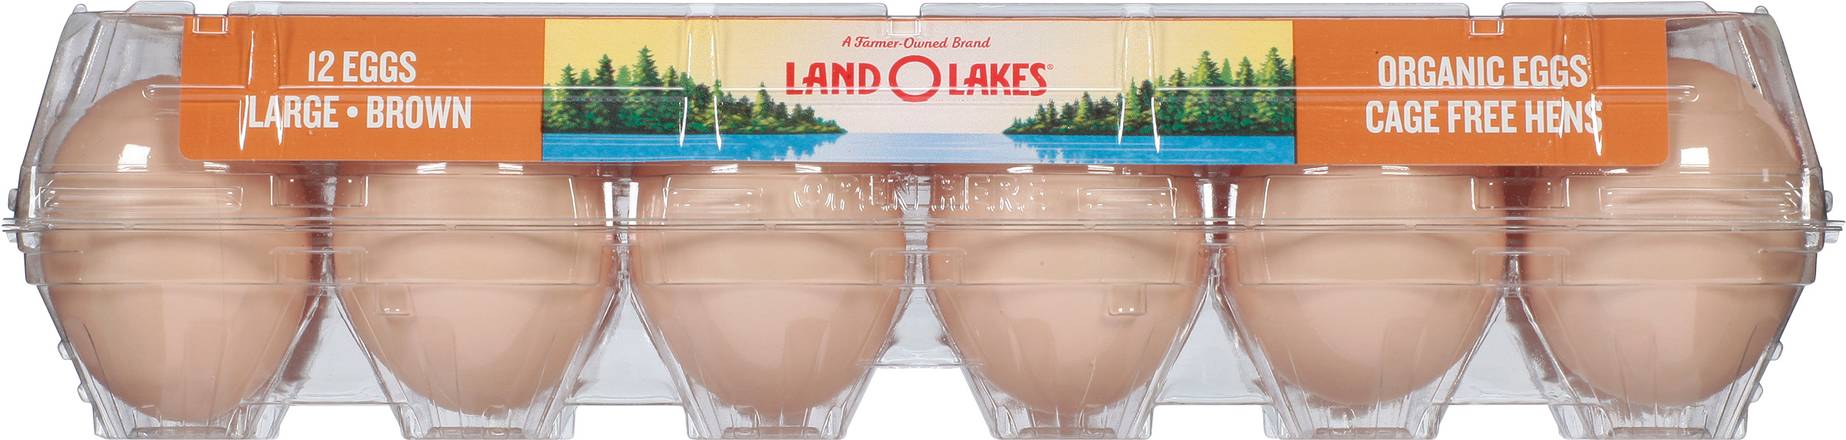 Land O'lakes Large Brown Organic Eggs (12 ct)